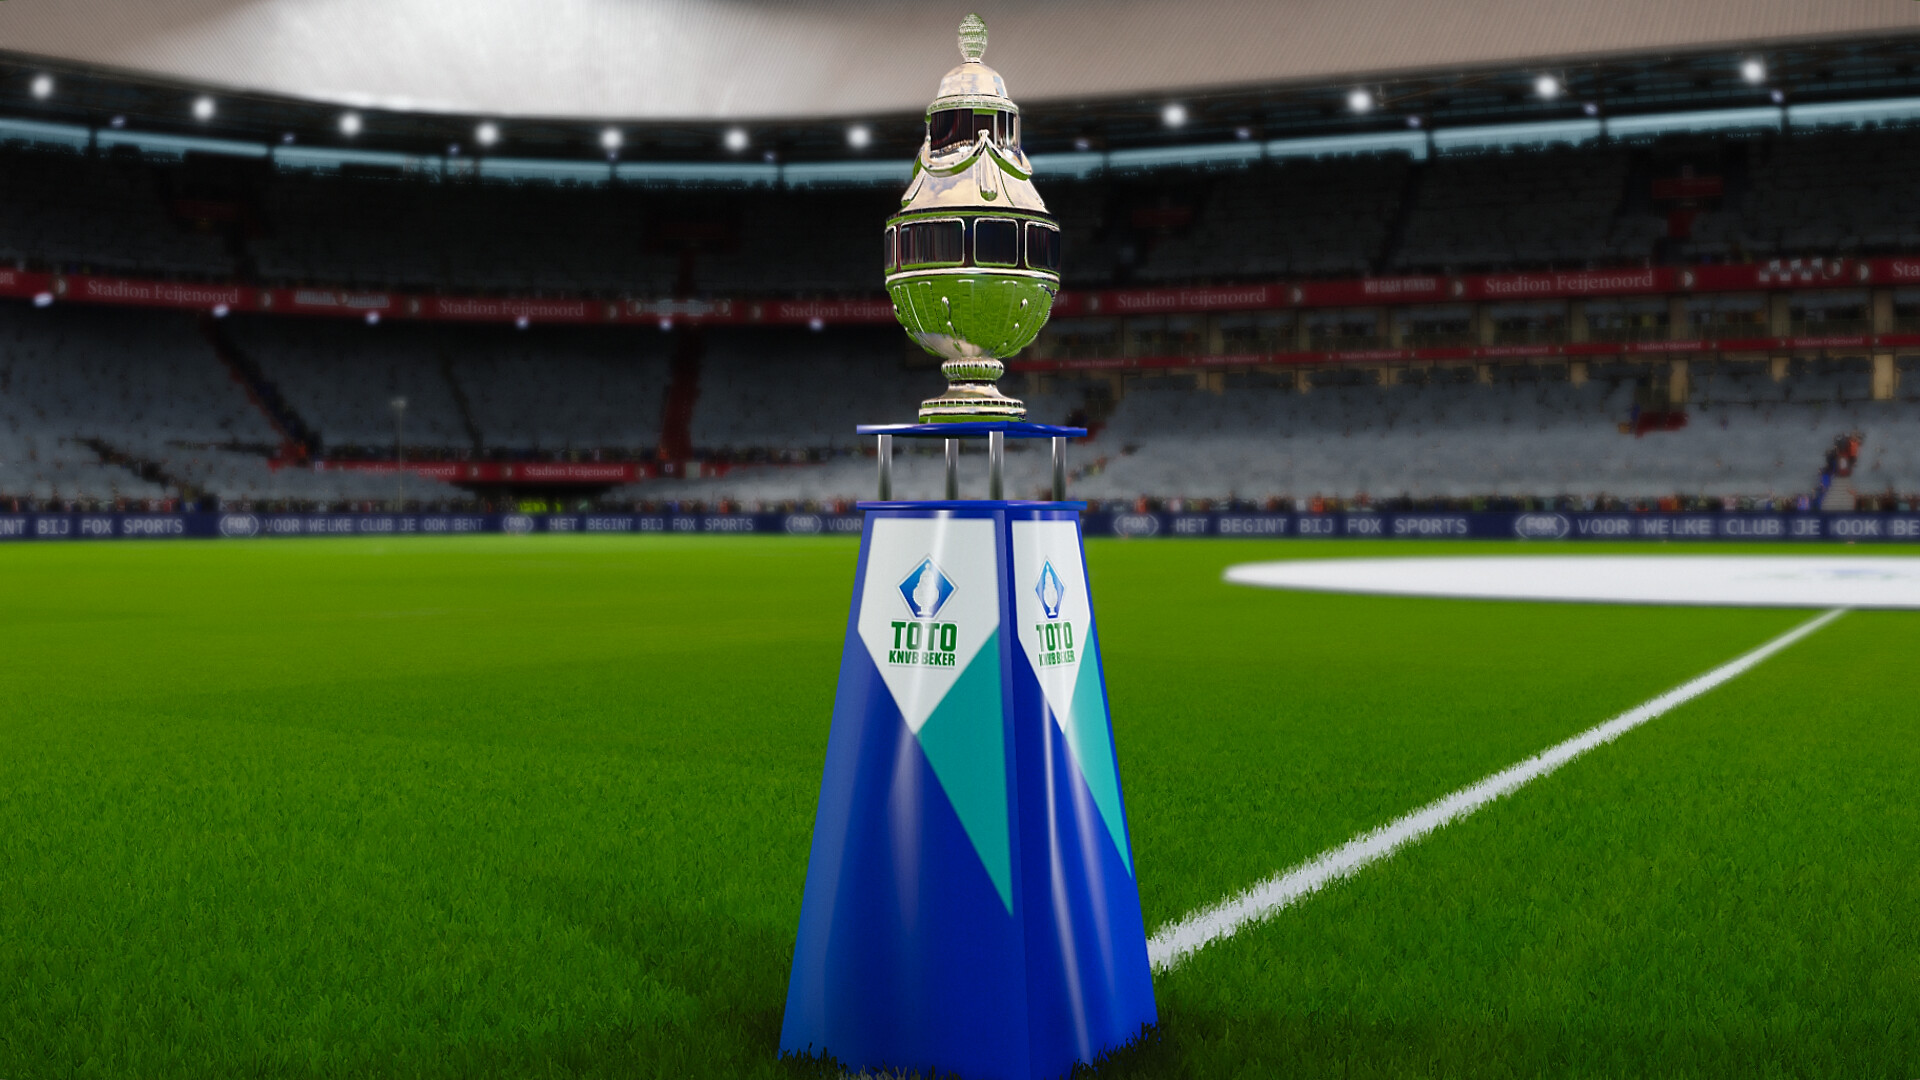 ArtStation - KNVB Beker trophy for 2020/21